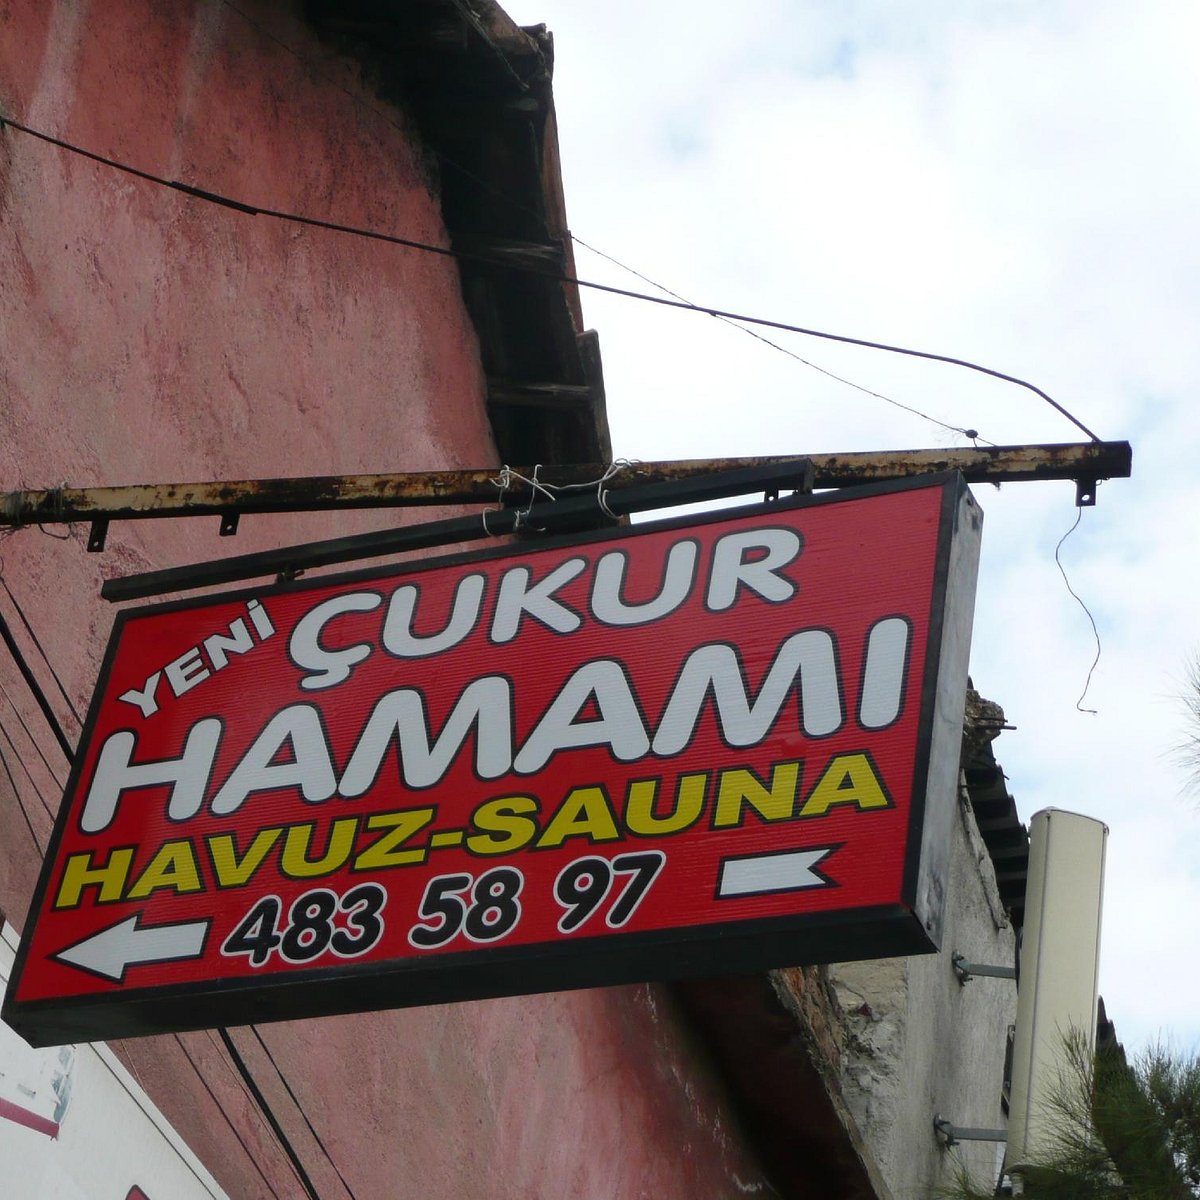 Cukur Hamami, Измир: лучшие советы перед посещением - Tripadvisor